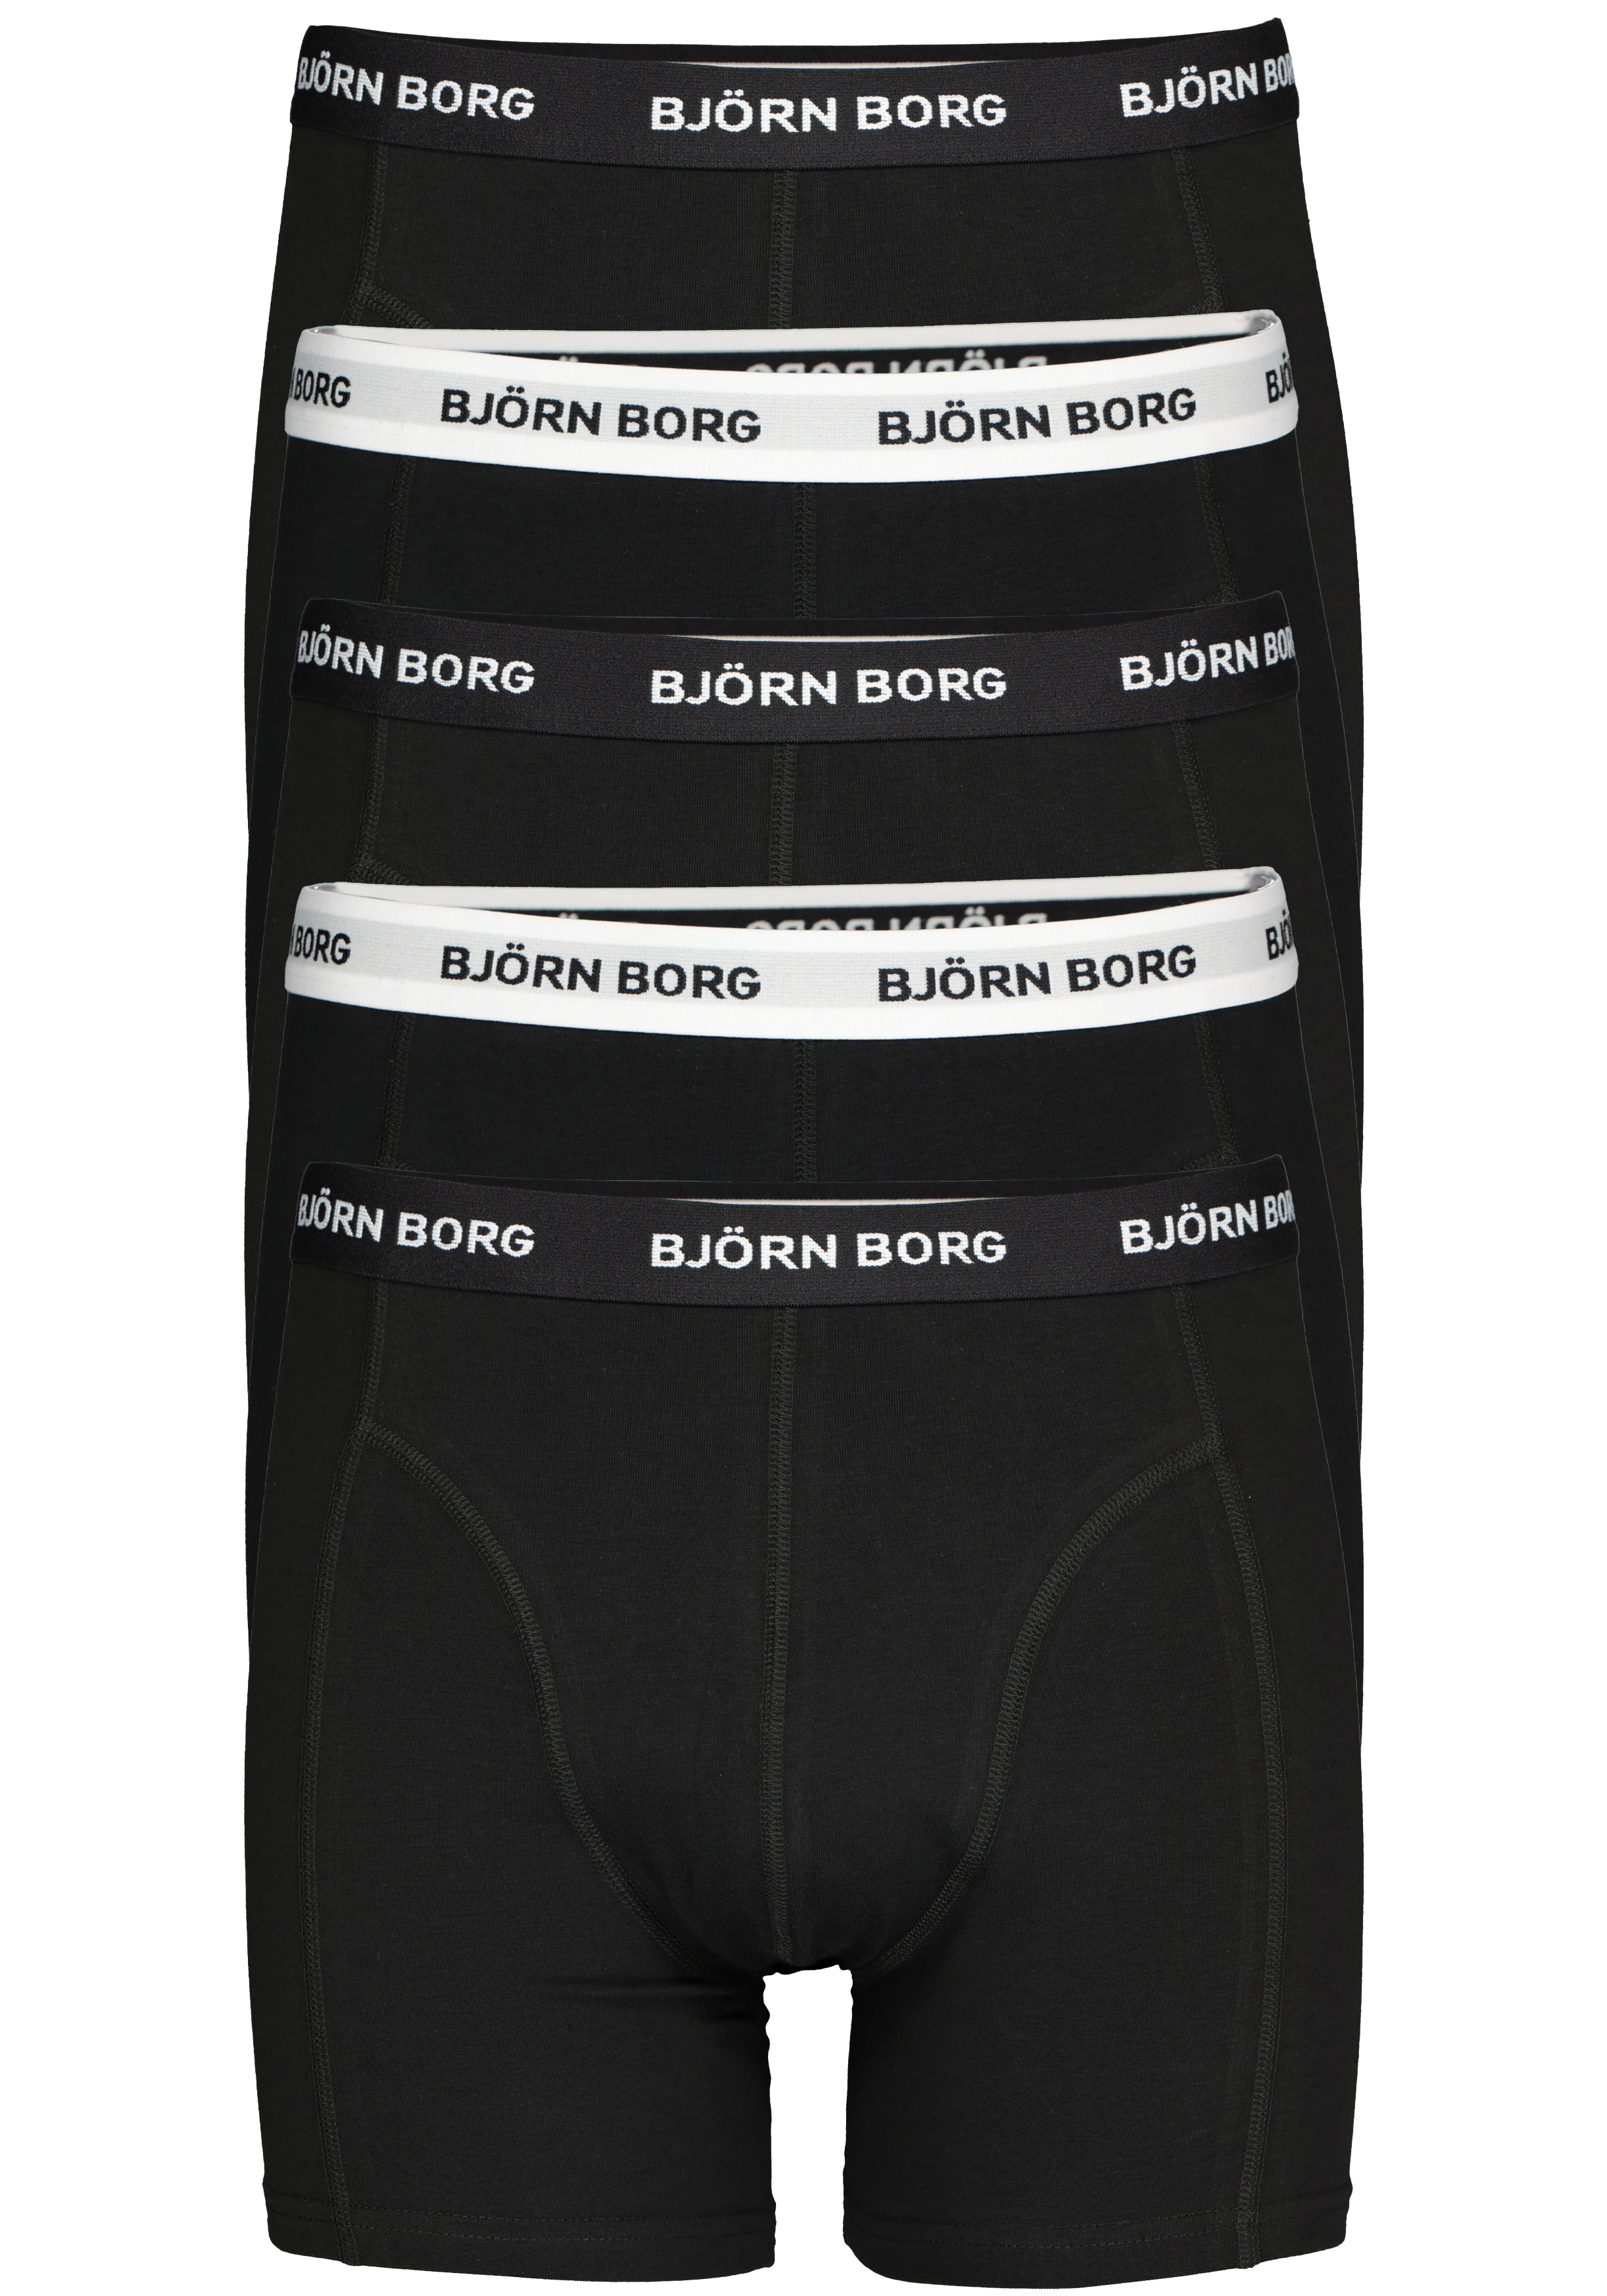 scheiden maximaal rekenmachine Bjorn Borg boxershorts Essential (5-pack), heren boxers normale lengte,...  - vakantie DEALS: bestel vele artikelen van topmerken met korting